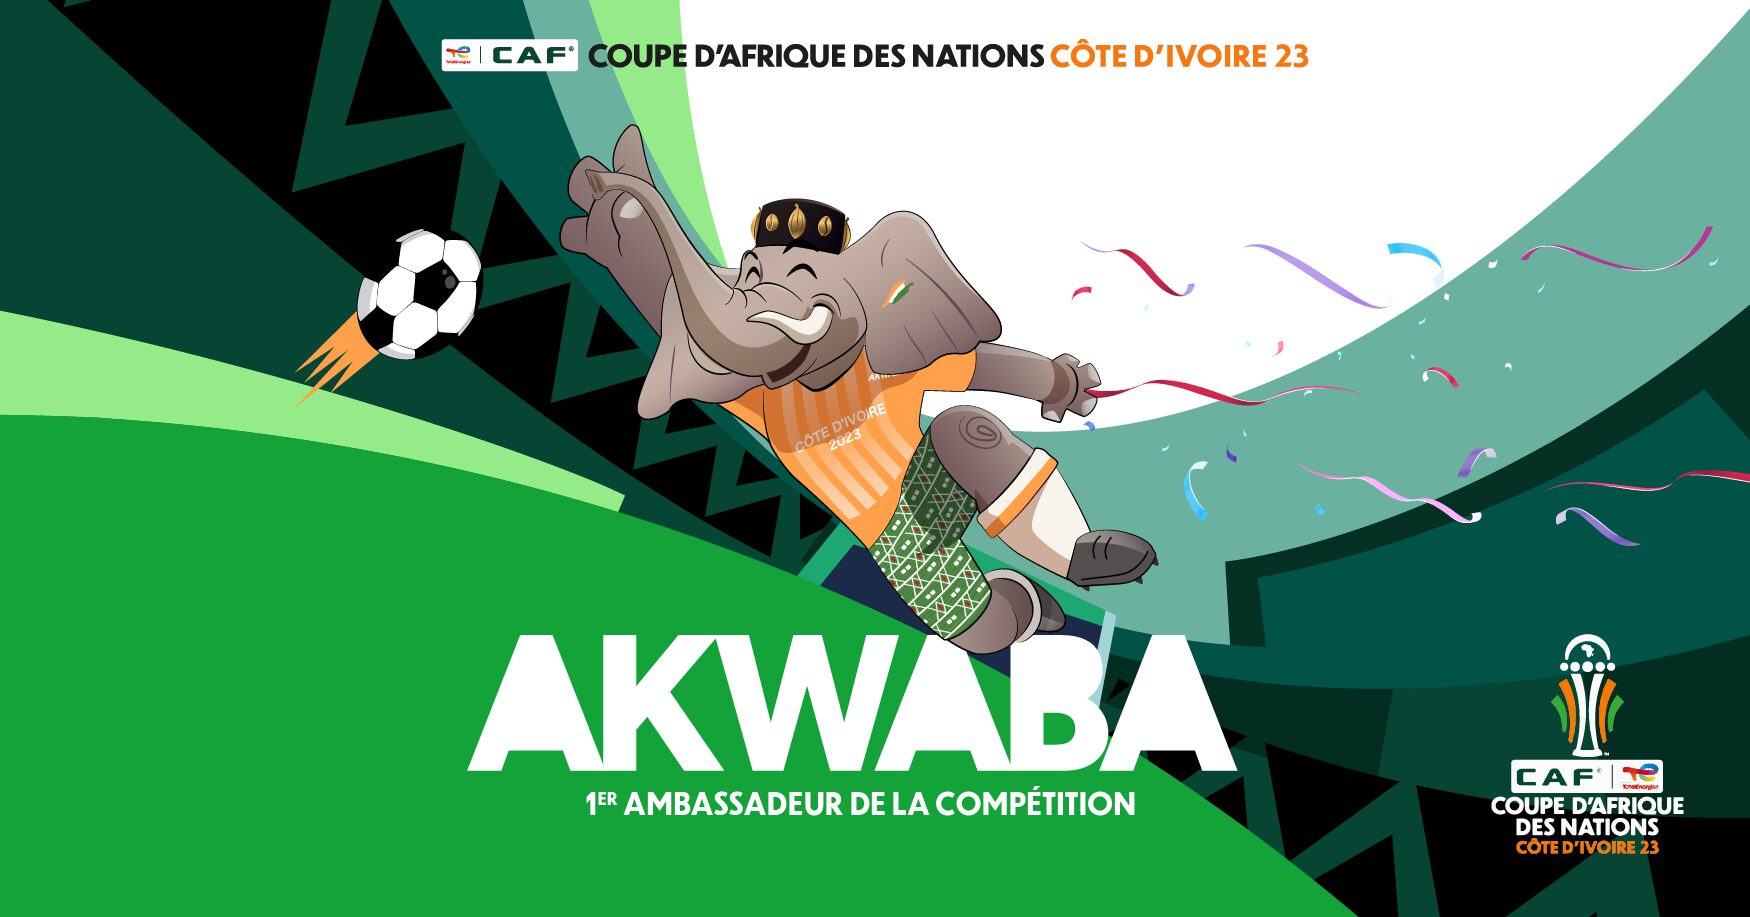 Découvrez la magie de la Coupe d'Afrique des Nations 2024 en Côte d'Ivoire, où le football se marie à une symphonie économique, médiatique, culturelle, et artistique. Explorez les nouvelles infrastructures, plongez dans les opportunités économiques florissantes, suivez l'excitation médiatique de Canal Plus, et laissez-vous emporter par la dimension artistique qui voit les artistes nationaux créer des hymnes patriotiques. Une célébration holistique, unissant sport, économie, médias, culture, et art, cette CAN promet d'être une expérience inoubliable, propulsant la Côte d'Ivoire sous les feux des projecteurs mondiaux.